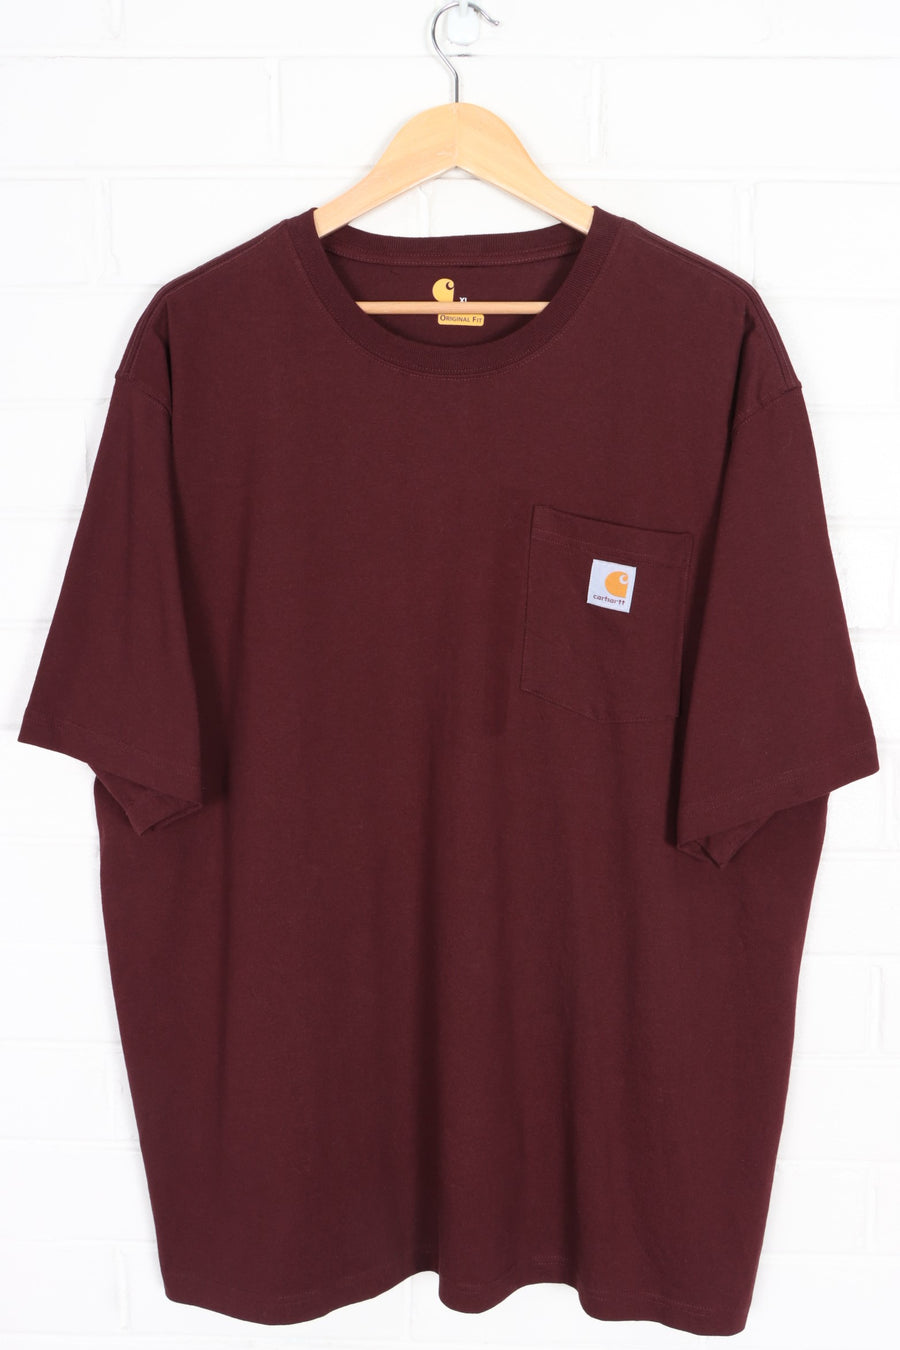 CARHARTT Burgundy Front Pocket Casual T-Shirt (XXL)